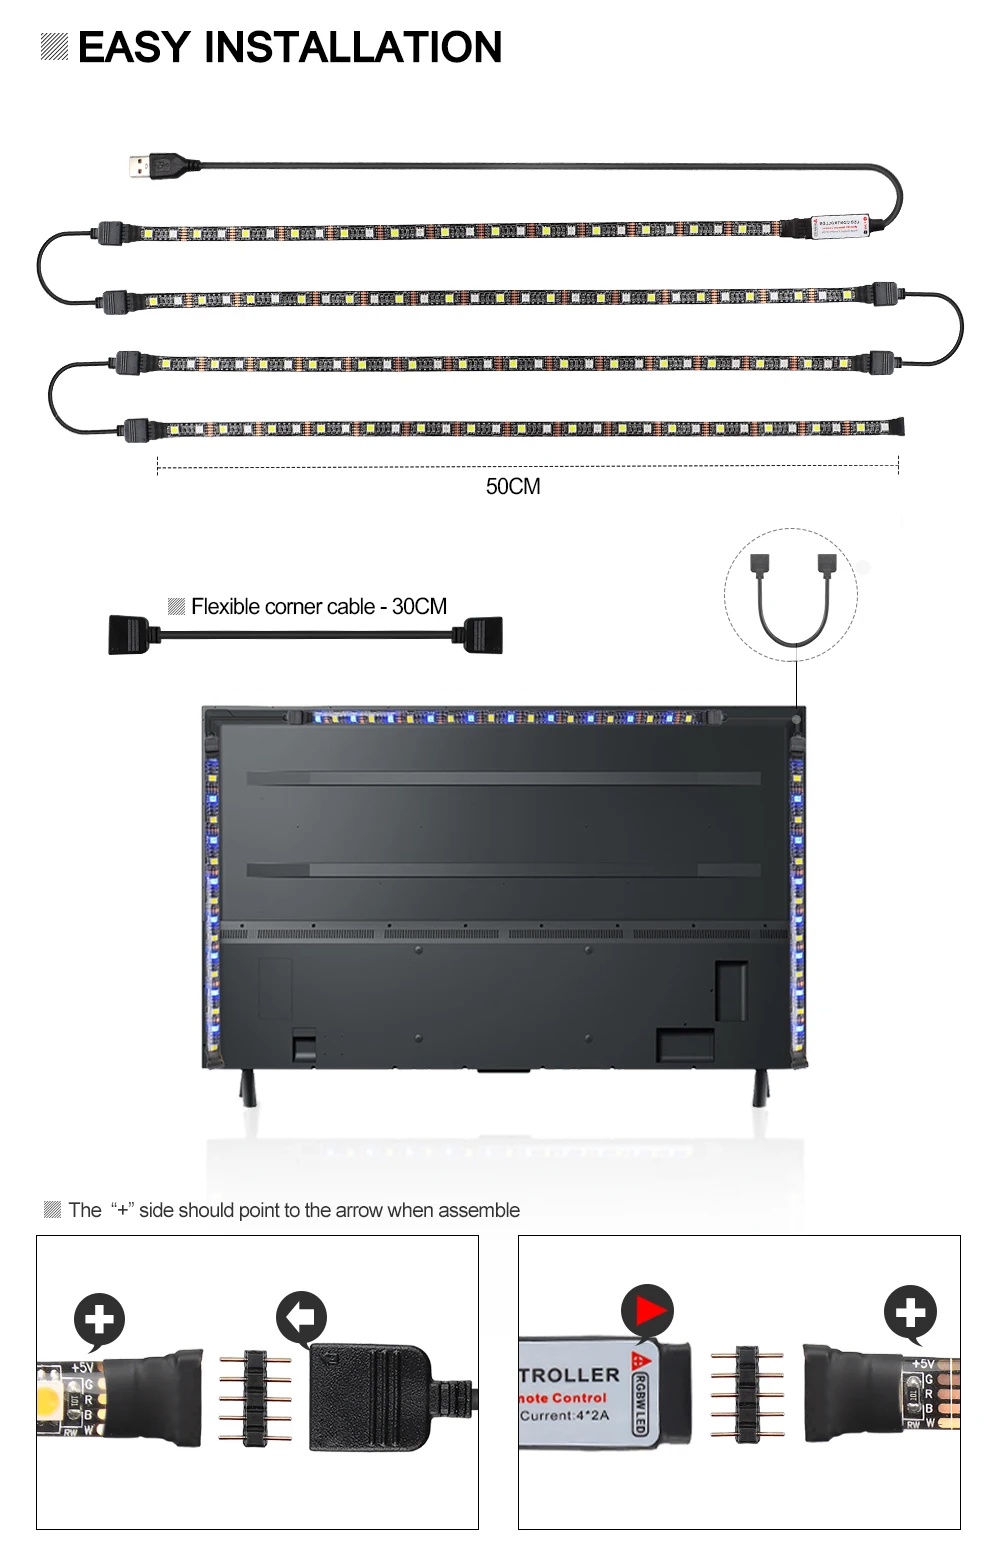 USB Светодиодная лента RGB+ белый с радиочастотным пультом дистанционного управления IP20/IP65 Гибкая полоса светильник 5050 RGBW RGBWW ТВ фоновый светильник gting